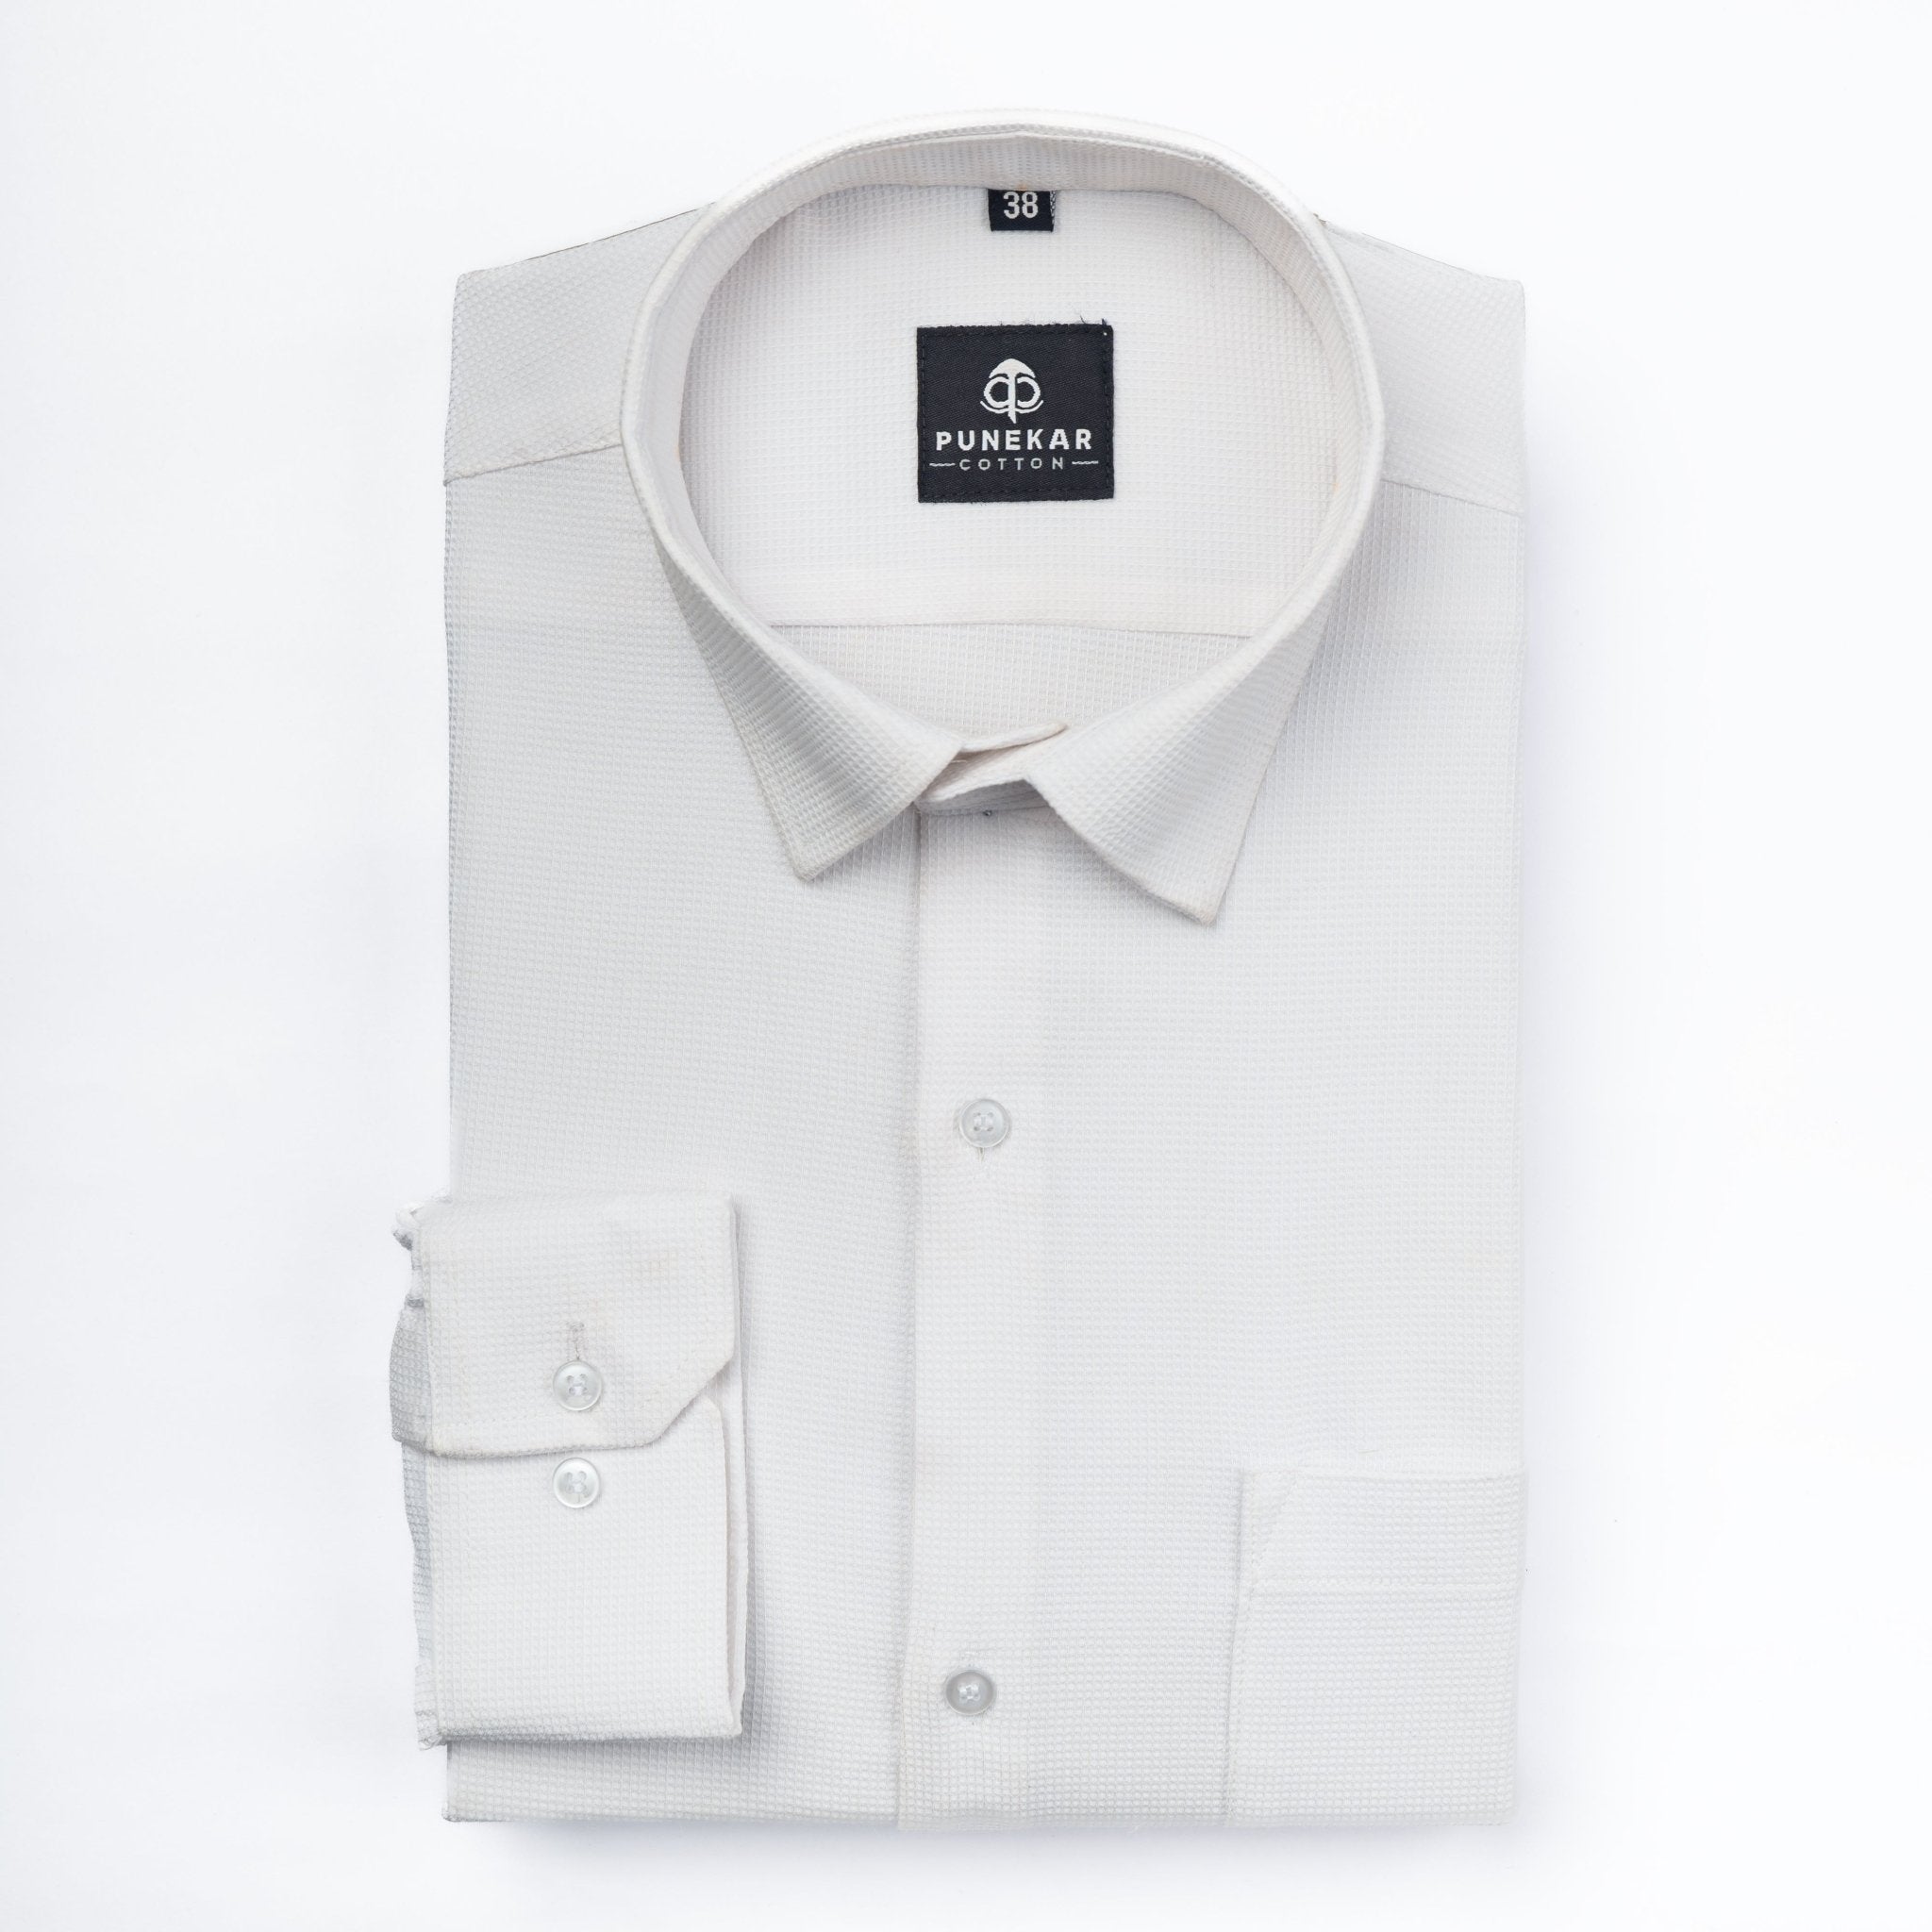 White Color Waffle Texture Cotton Shirt For Men - Punekar Cotton